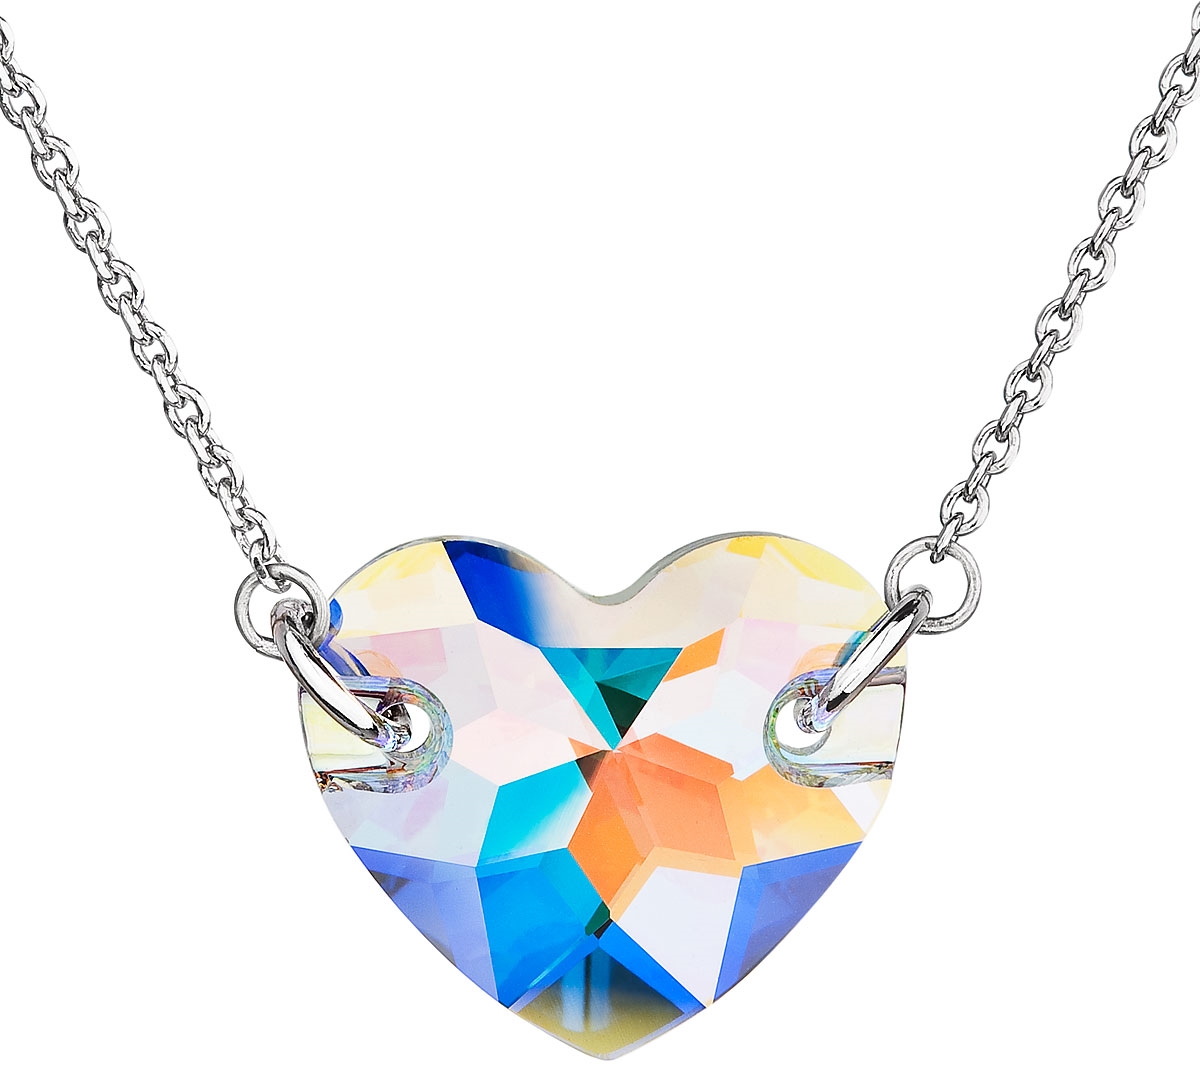 Strieborný náhrdelník s krištáľmi Swarovski biele AB efekt srdce 32021.2